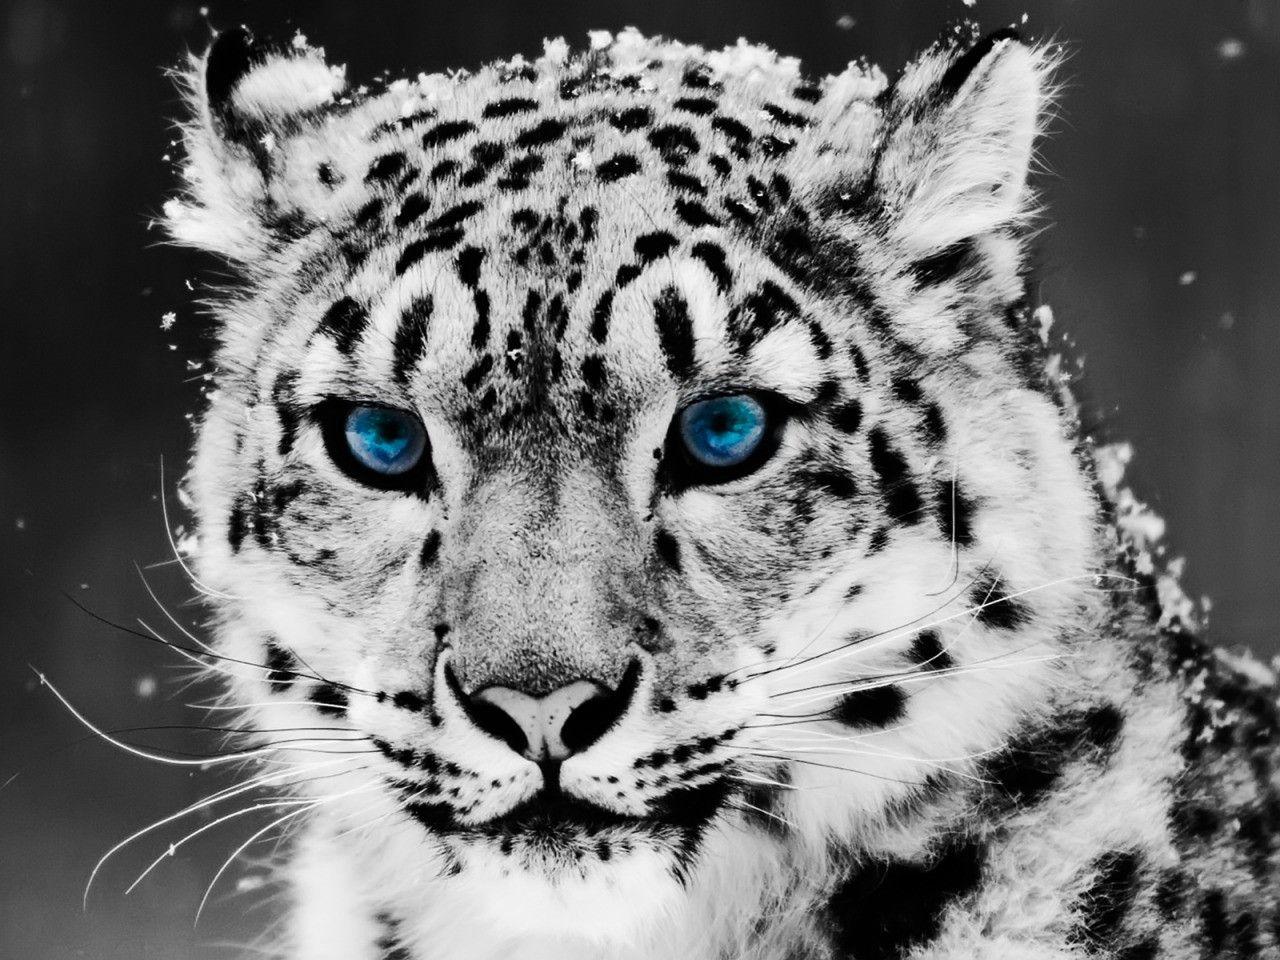 Snow Leopard Wallpaper Big Cats Animals